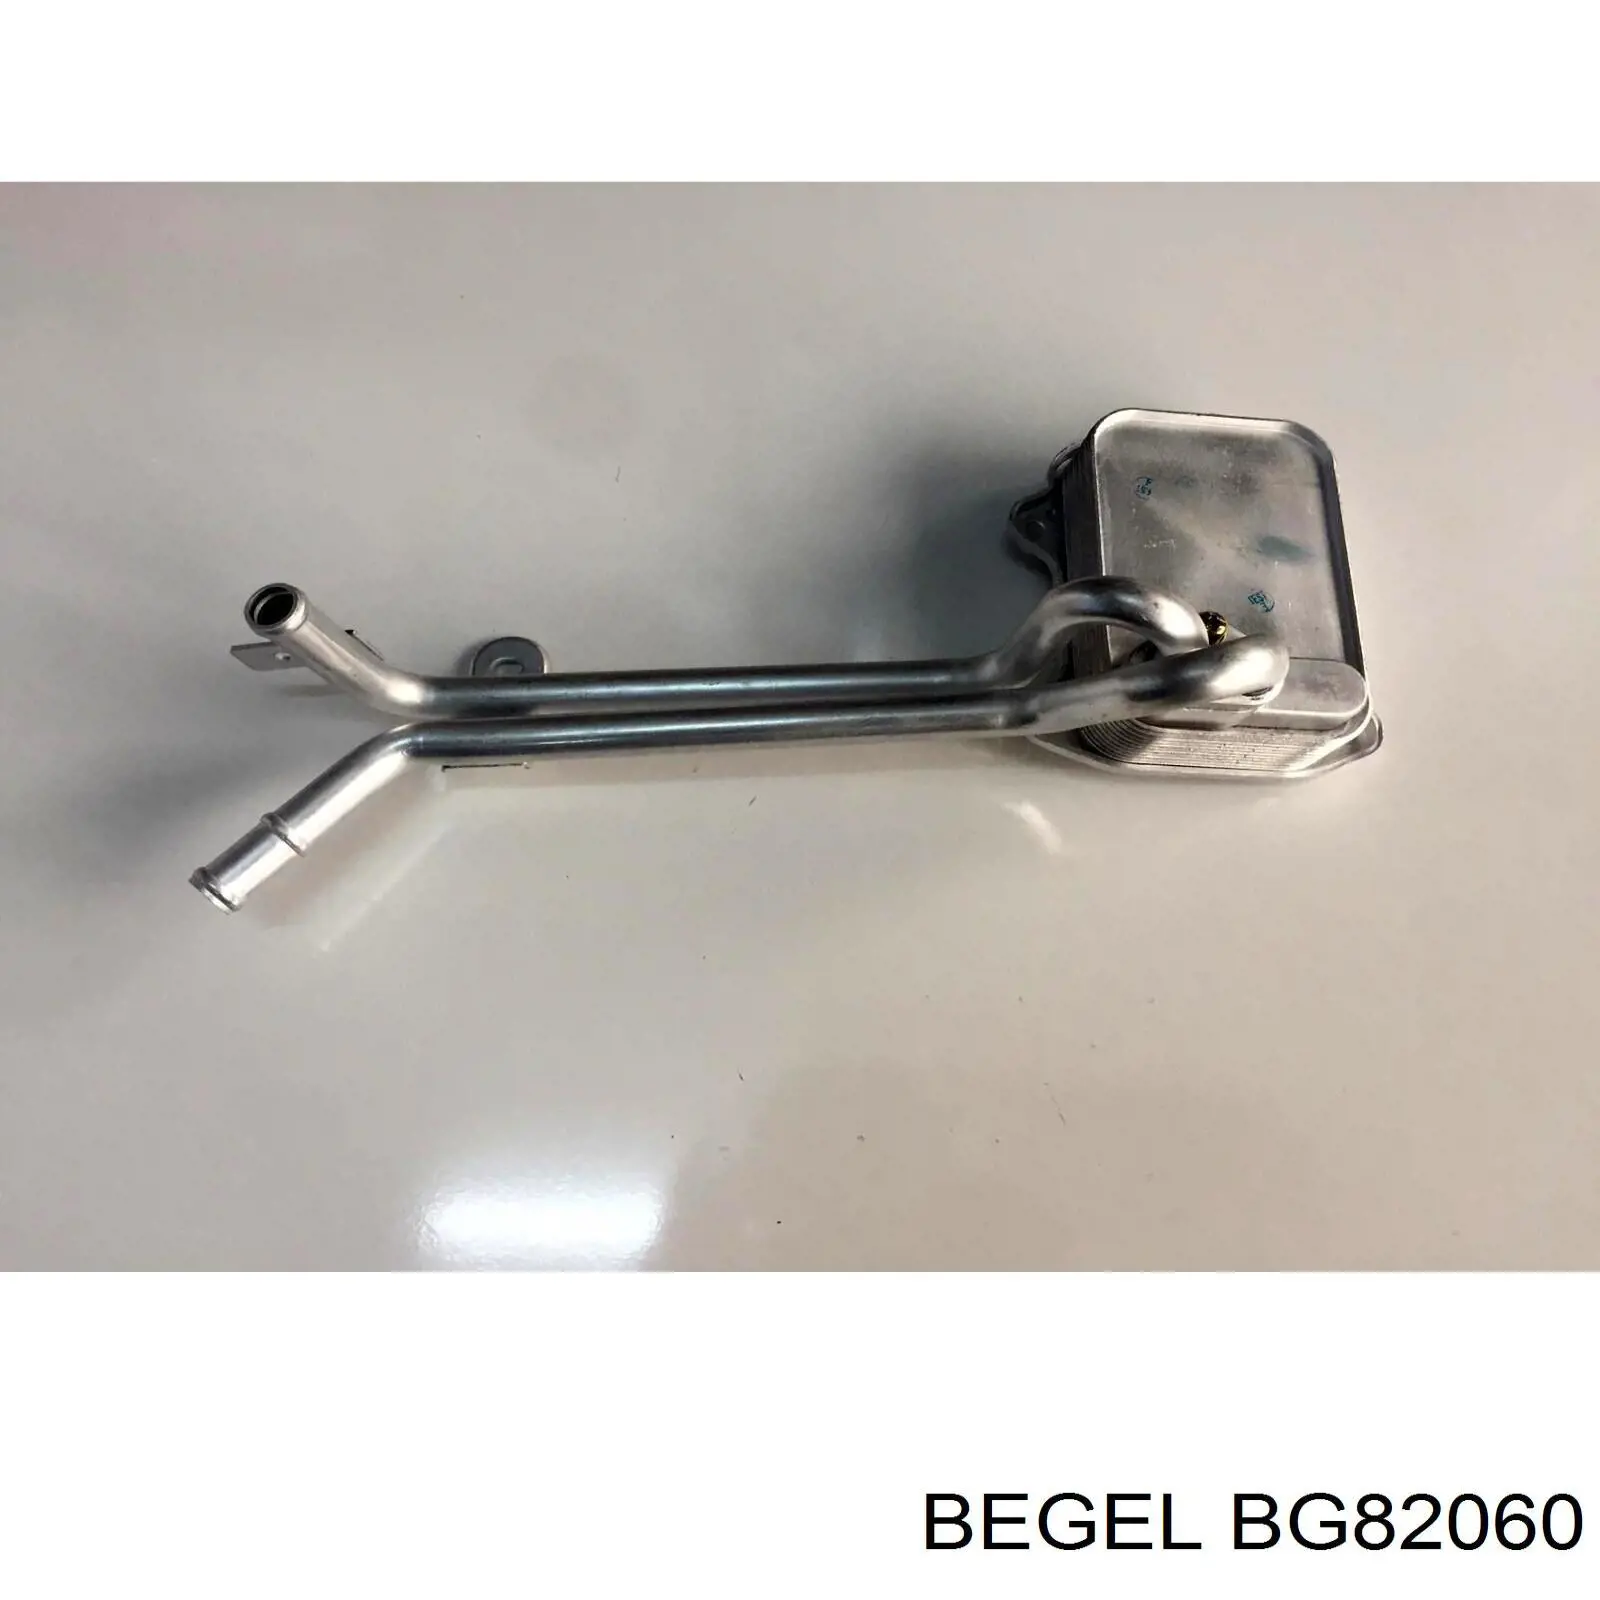 BG82060 Begel стоп-сигнал задний дополнительный